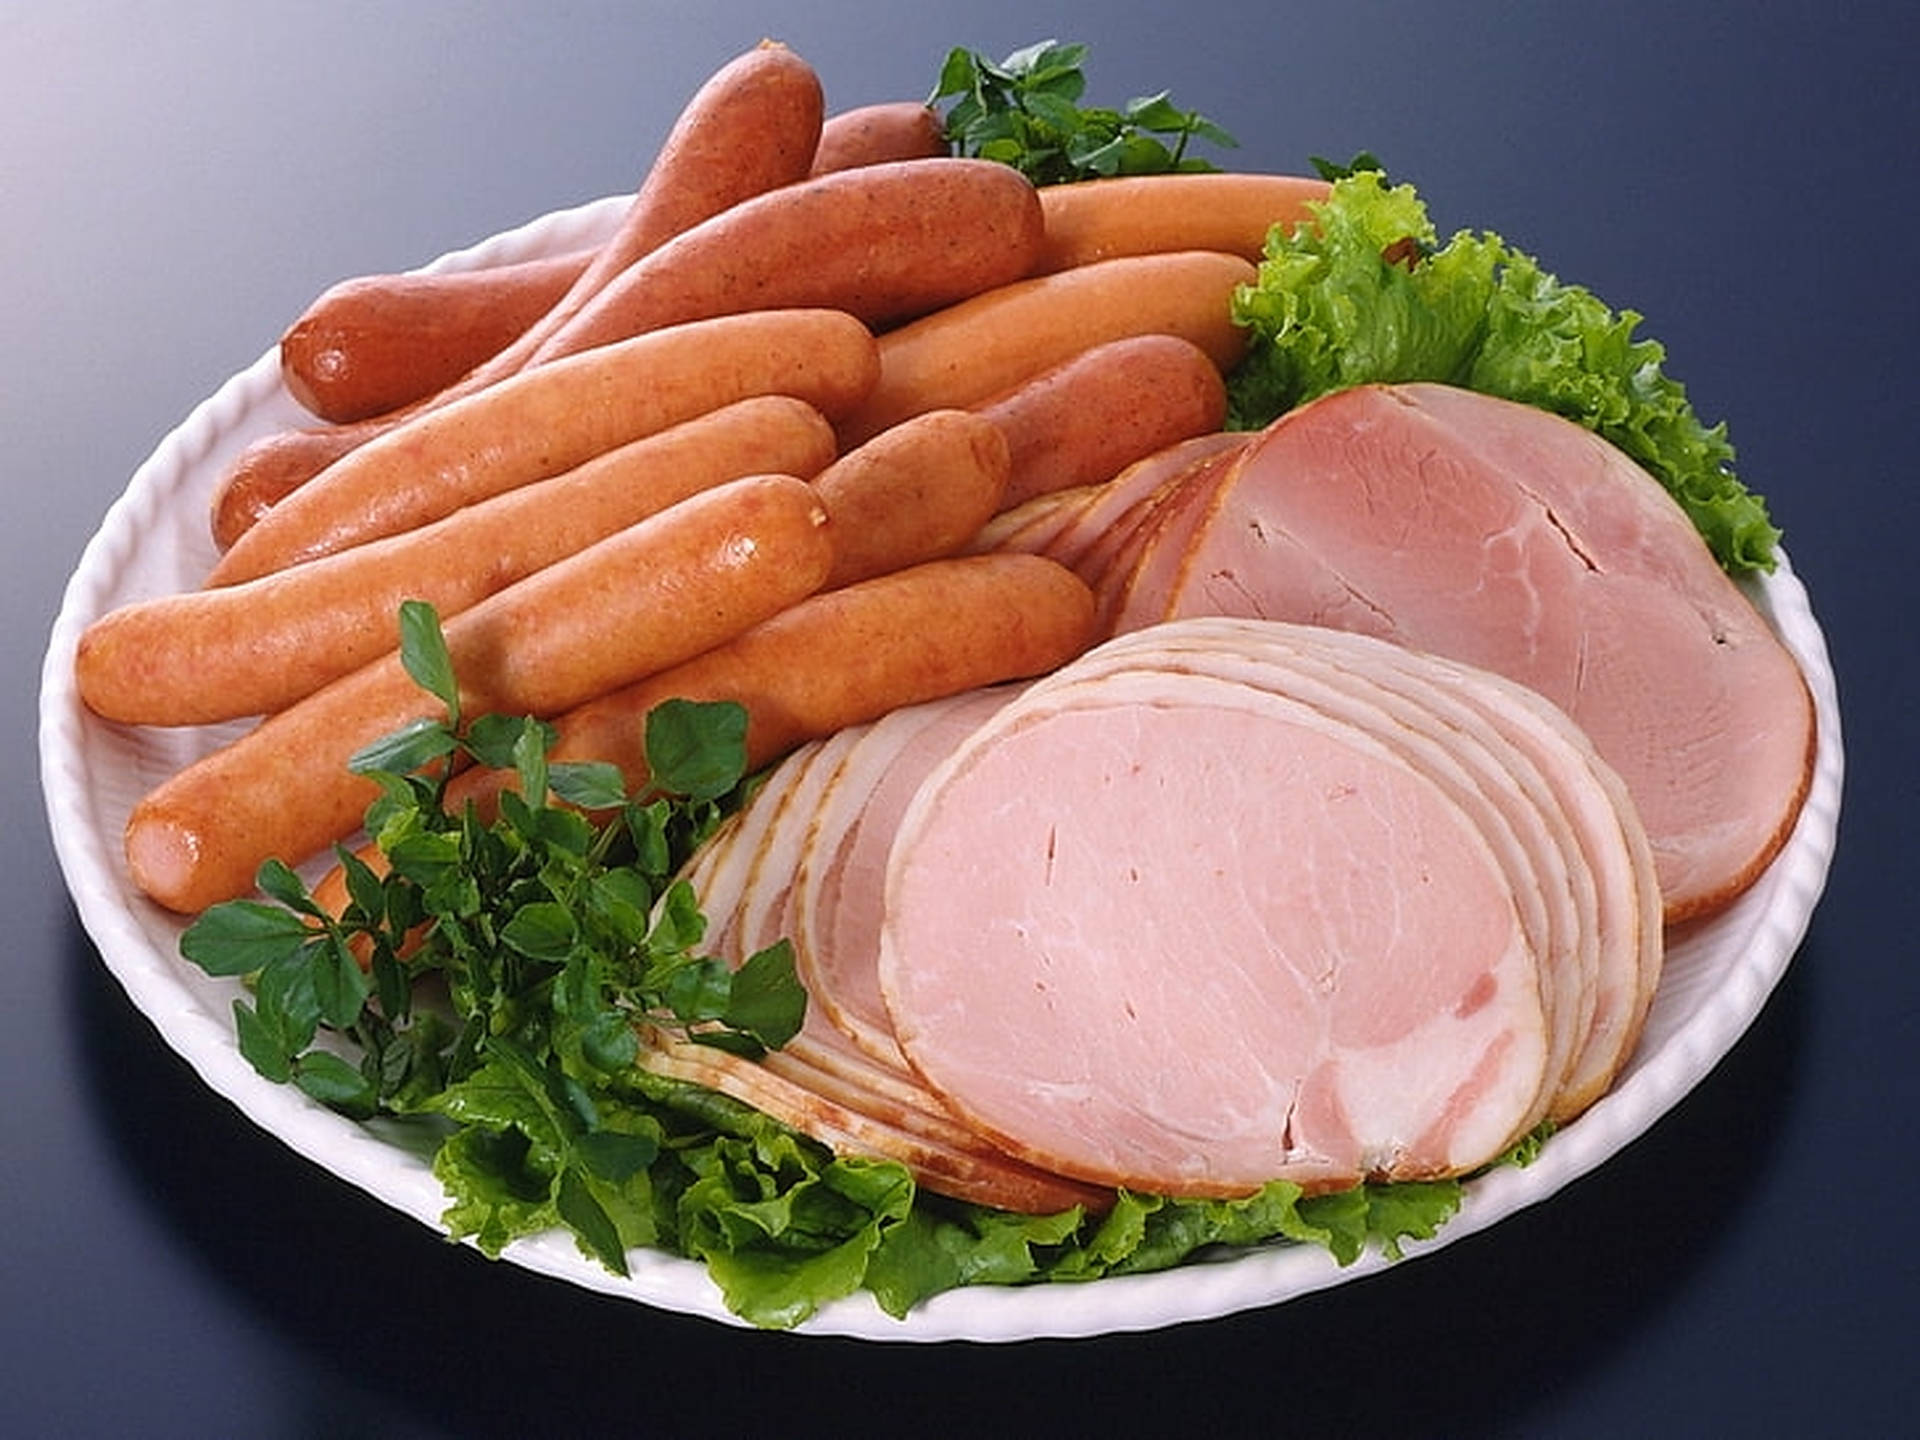 Sliced Round Ham